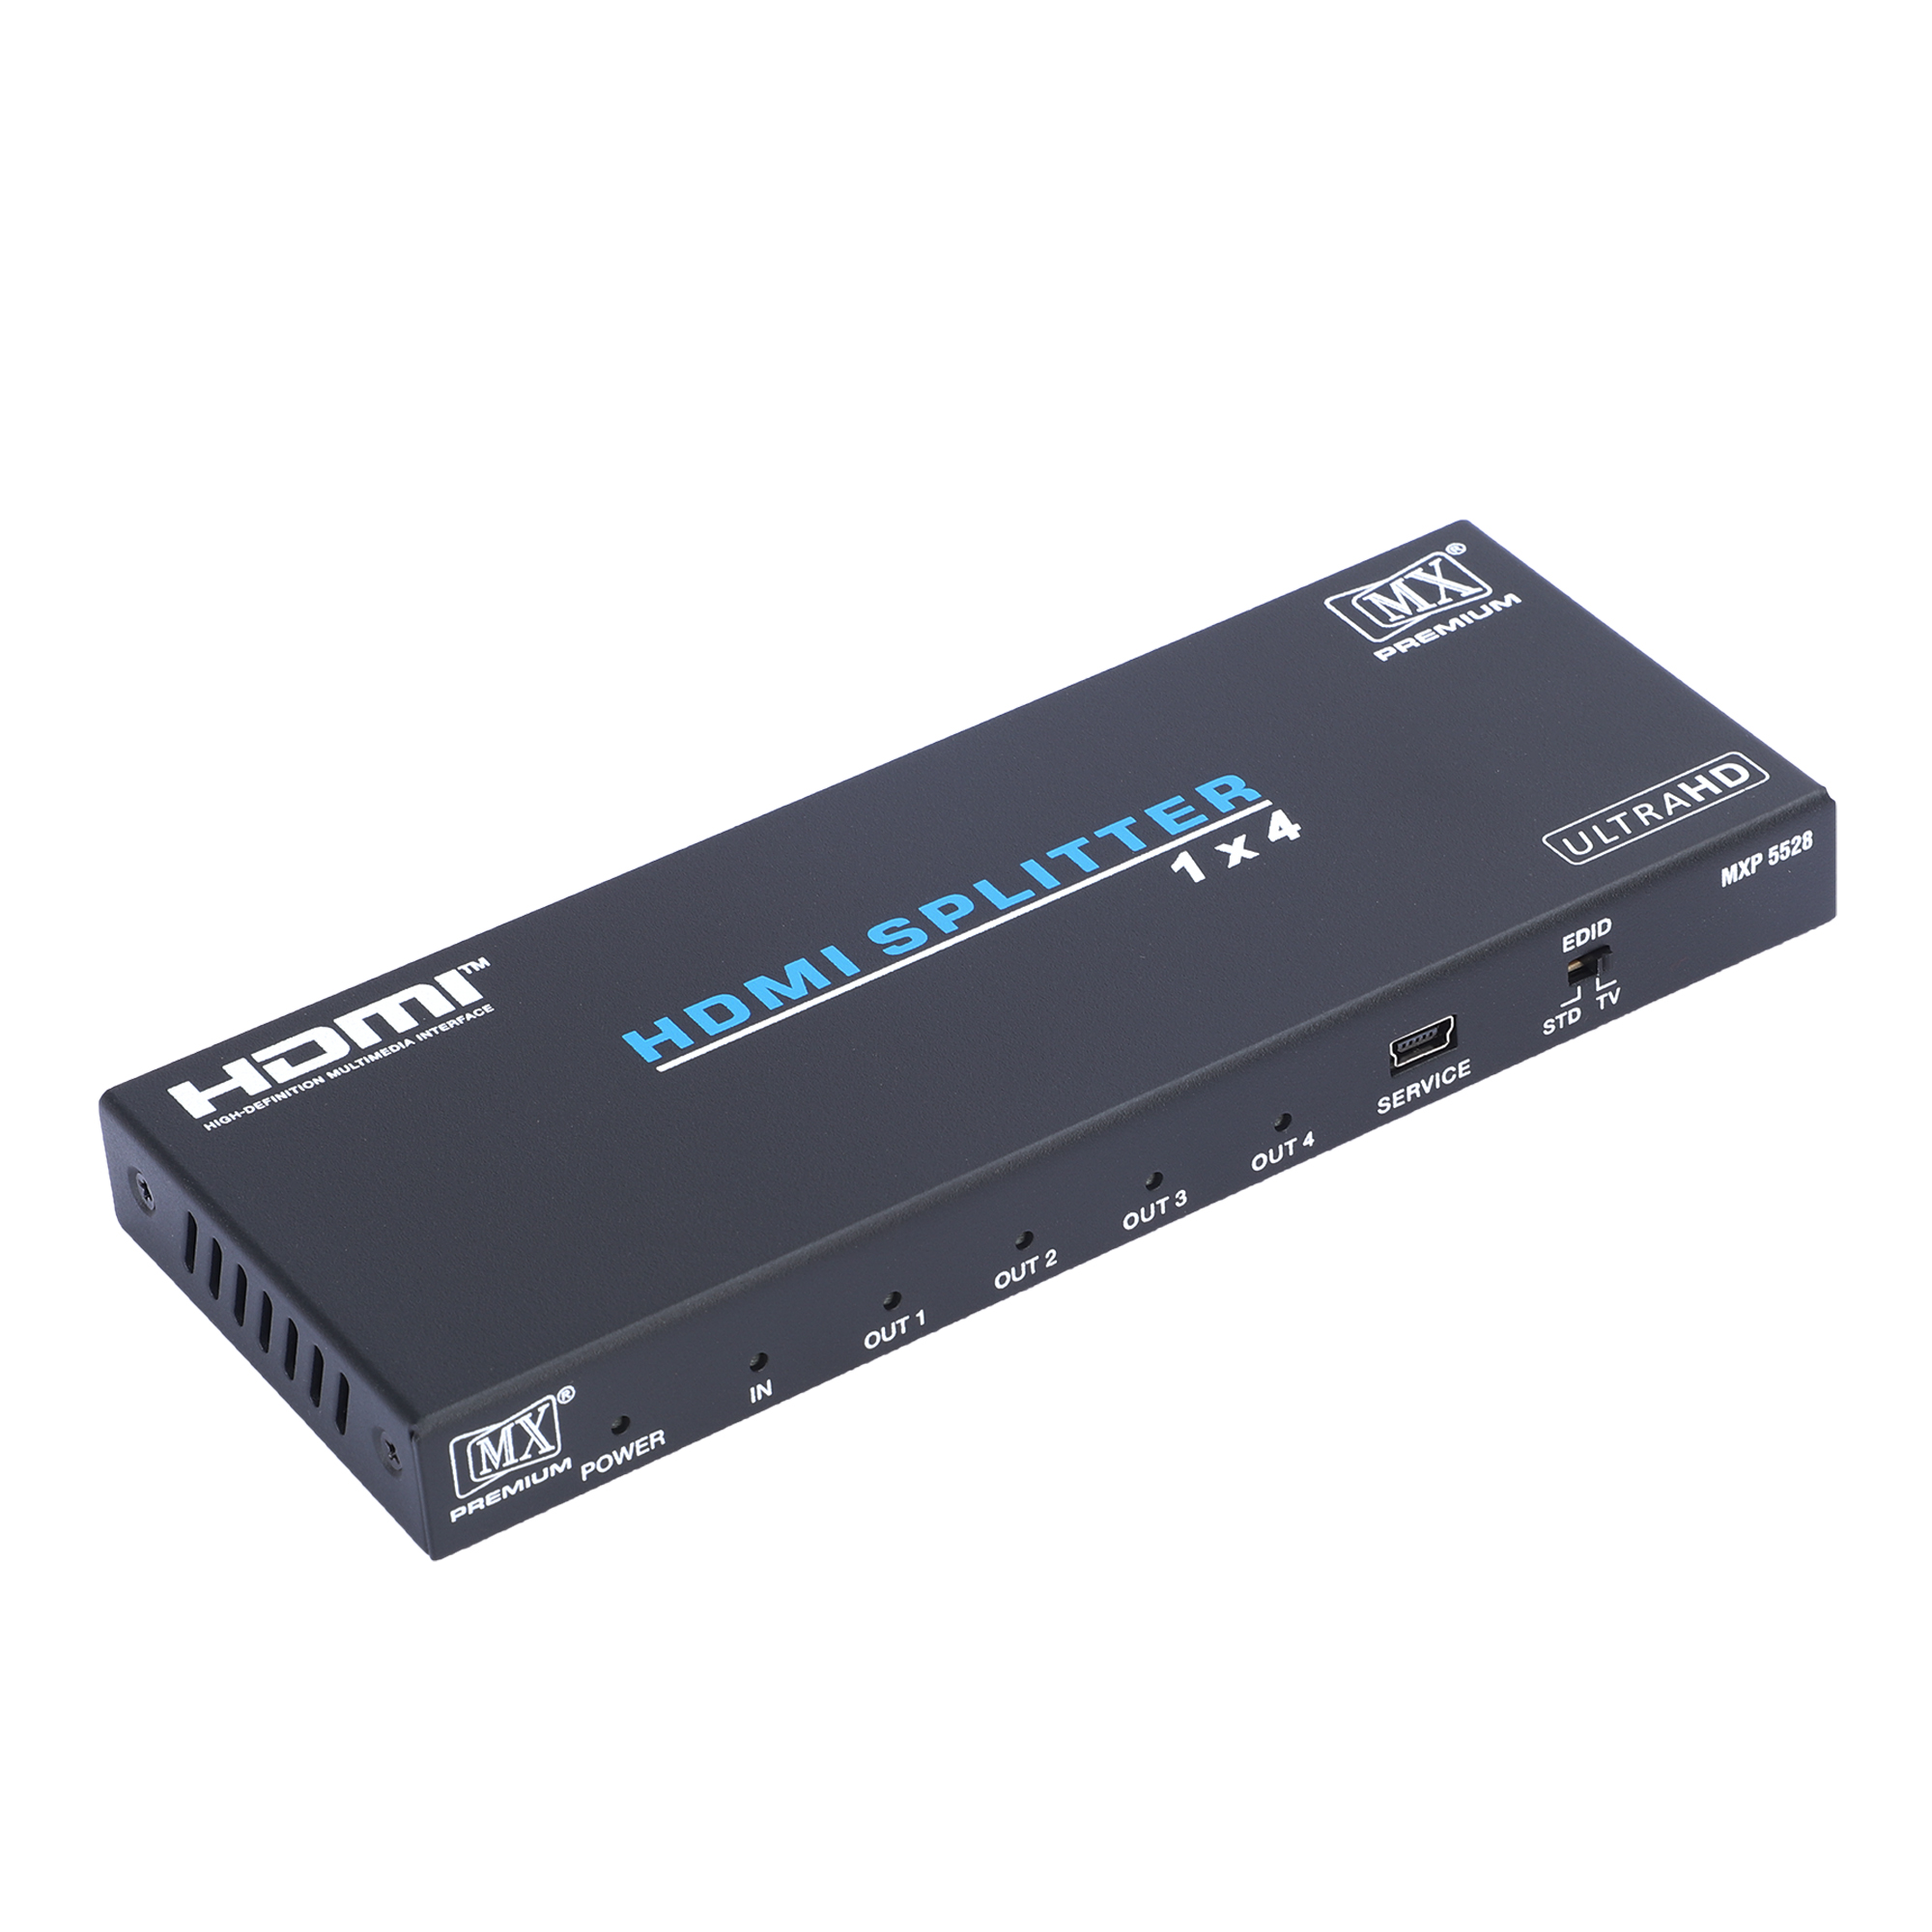 MX Premium HDMI SPLITTER 1X4 EDID SUPPORT (MXP-5528) - MX MDR TECHNOLOGIES  LIMITED